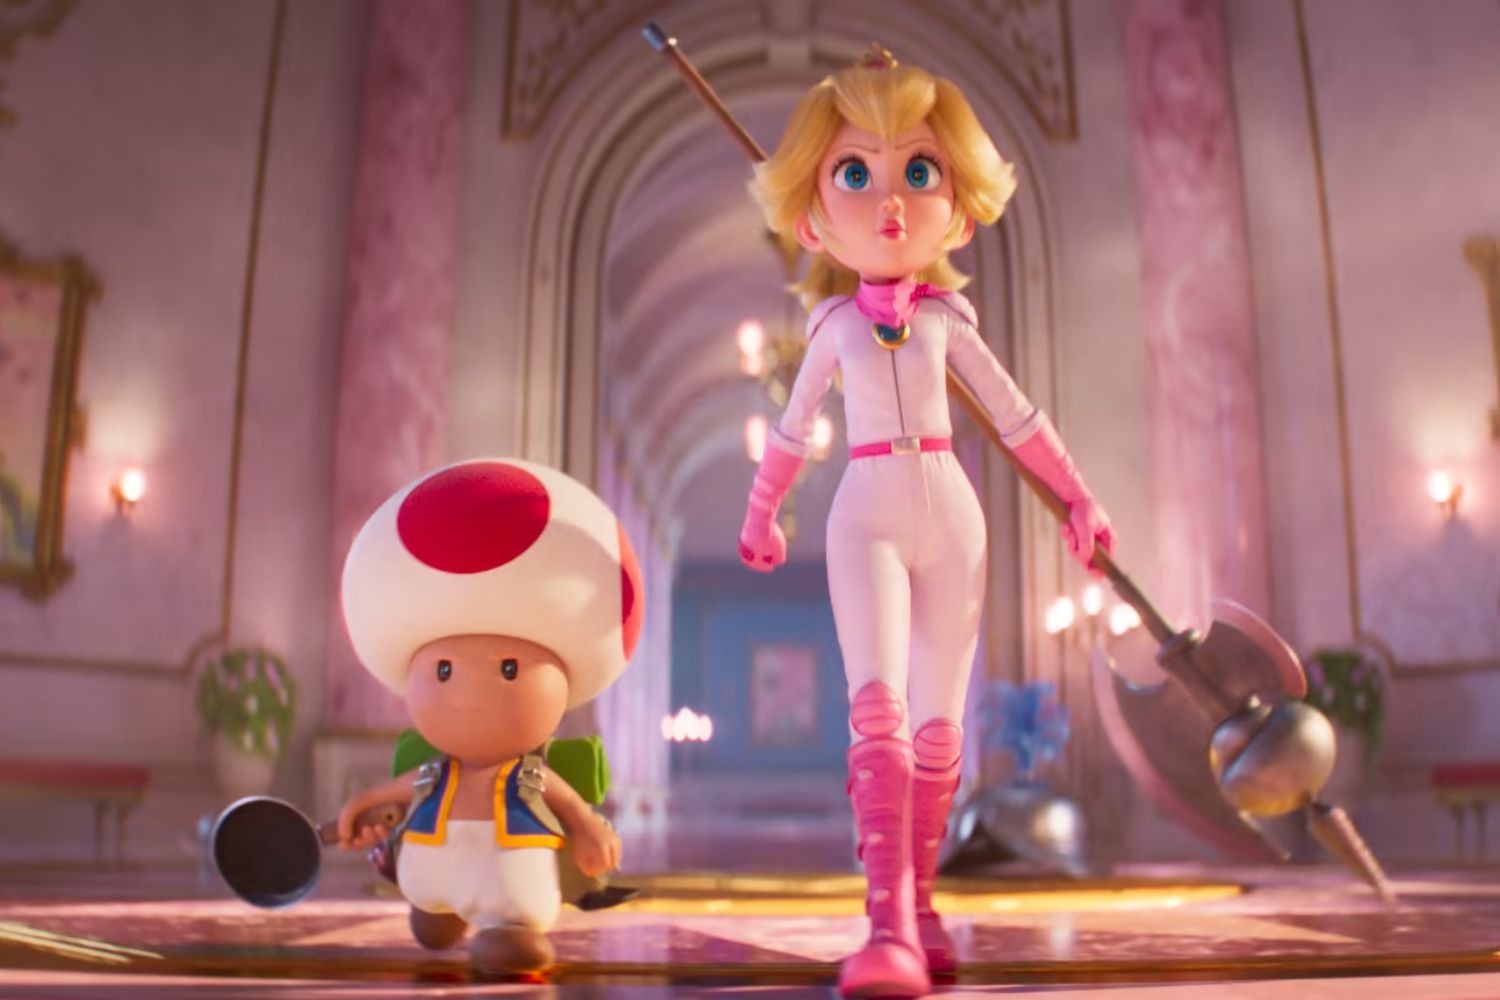 Super Mario Bros.: O Filme alcança nova marca nas bilheterias dos EUA